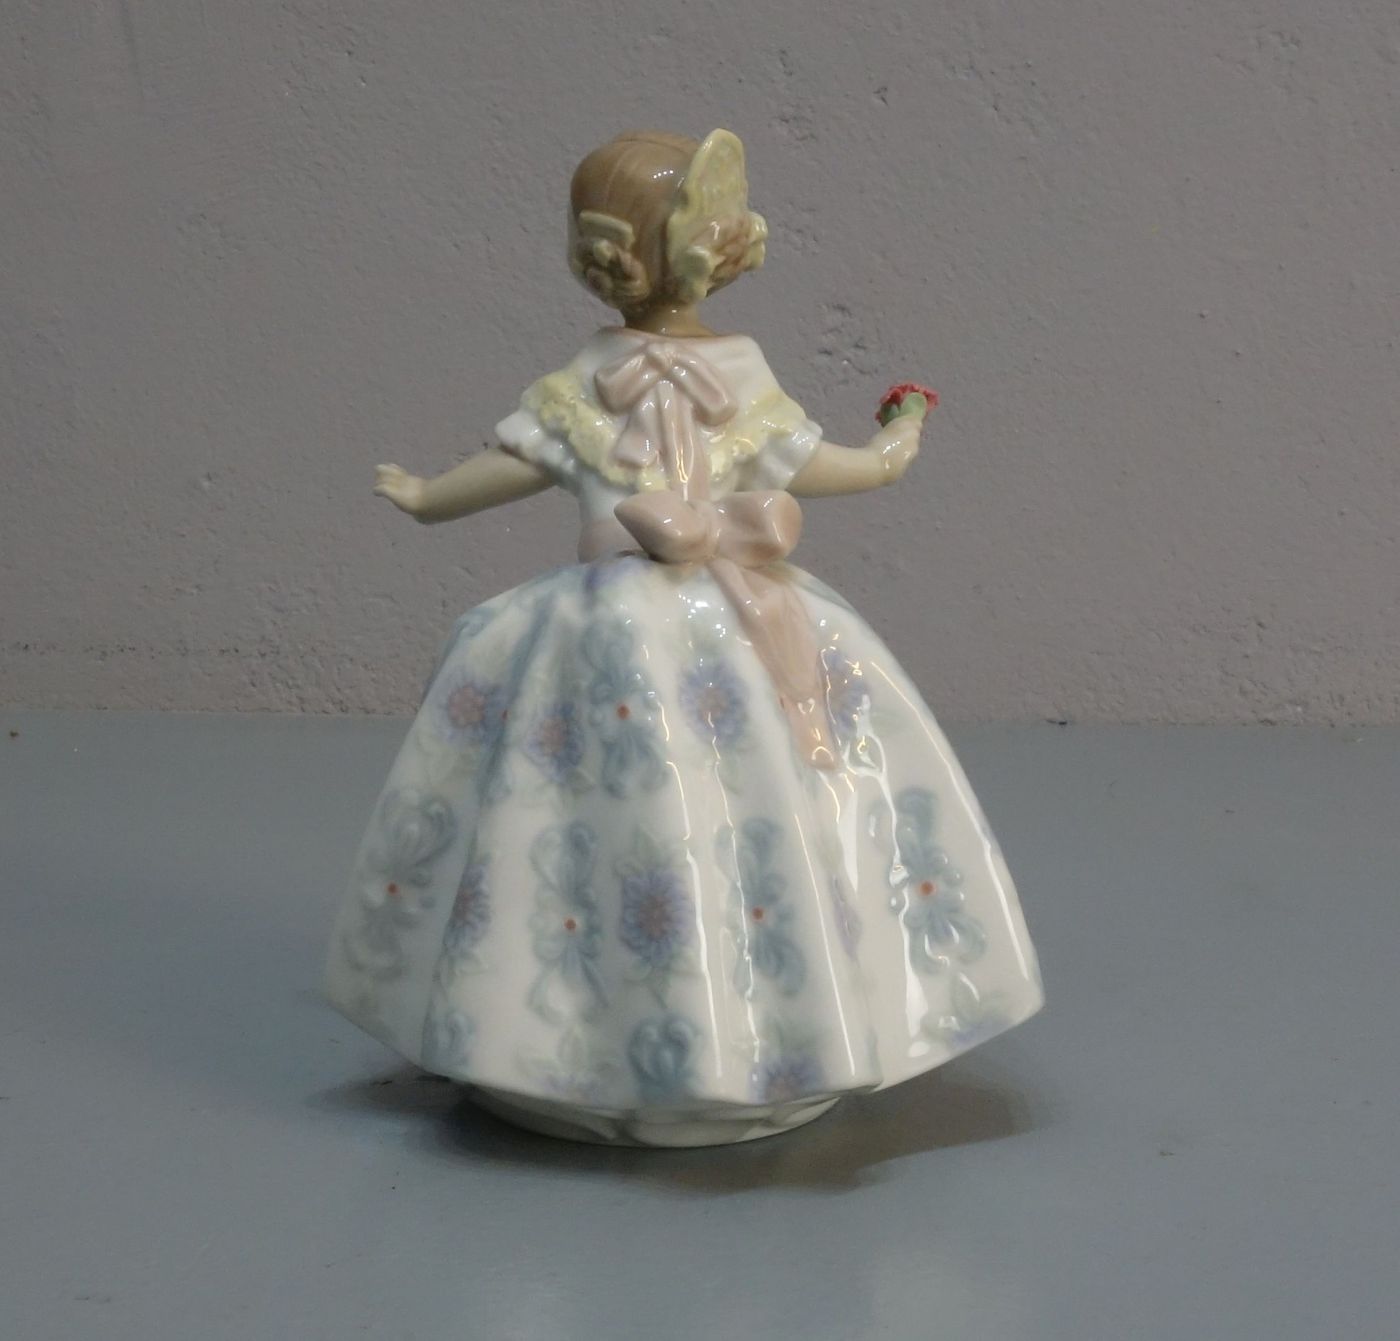 FIGUR: "Spanische Tänzerin" / porcelain figure: "spanish dancer", Porzellan, Manufaktur Lladro, - Image 3 of 5